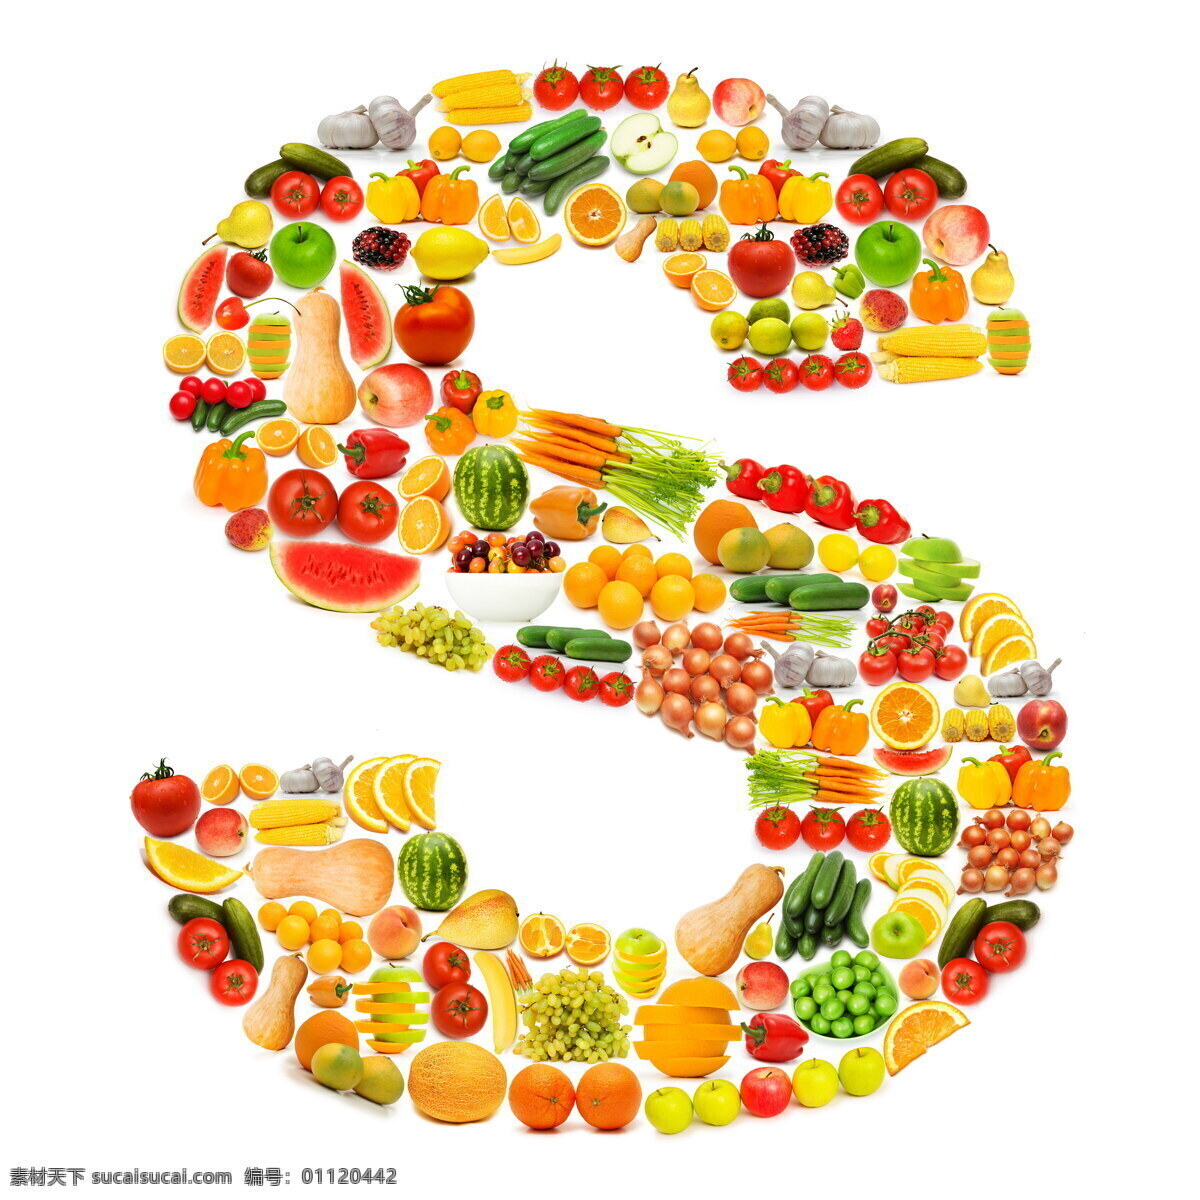 蔬菜水果 组成 字母 s 字母s 辣椒 柠檬 苹果 黄瓜 橙子 香蕉 蔬菜 水果 食物 水果蔬菜 餐饮美食 水果图片